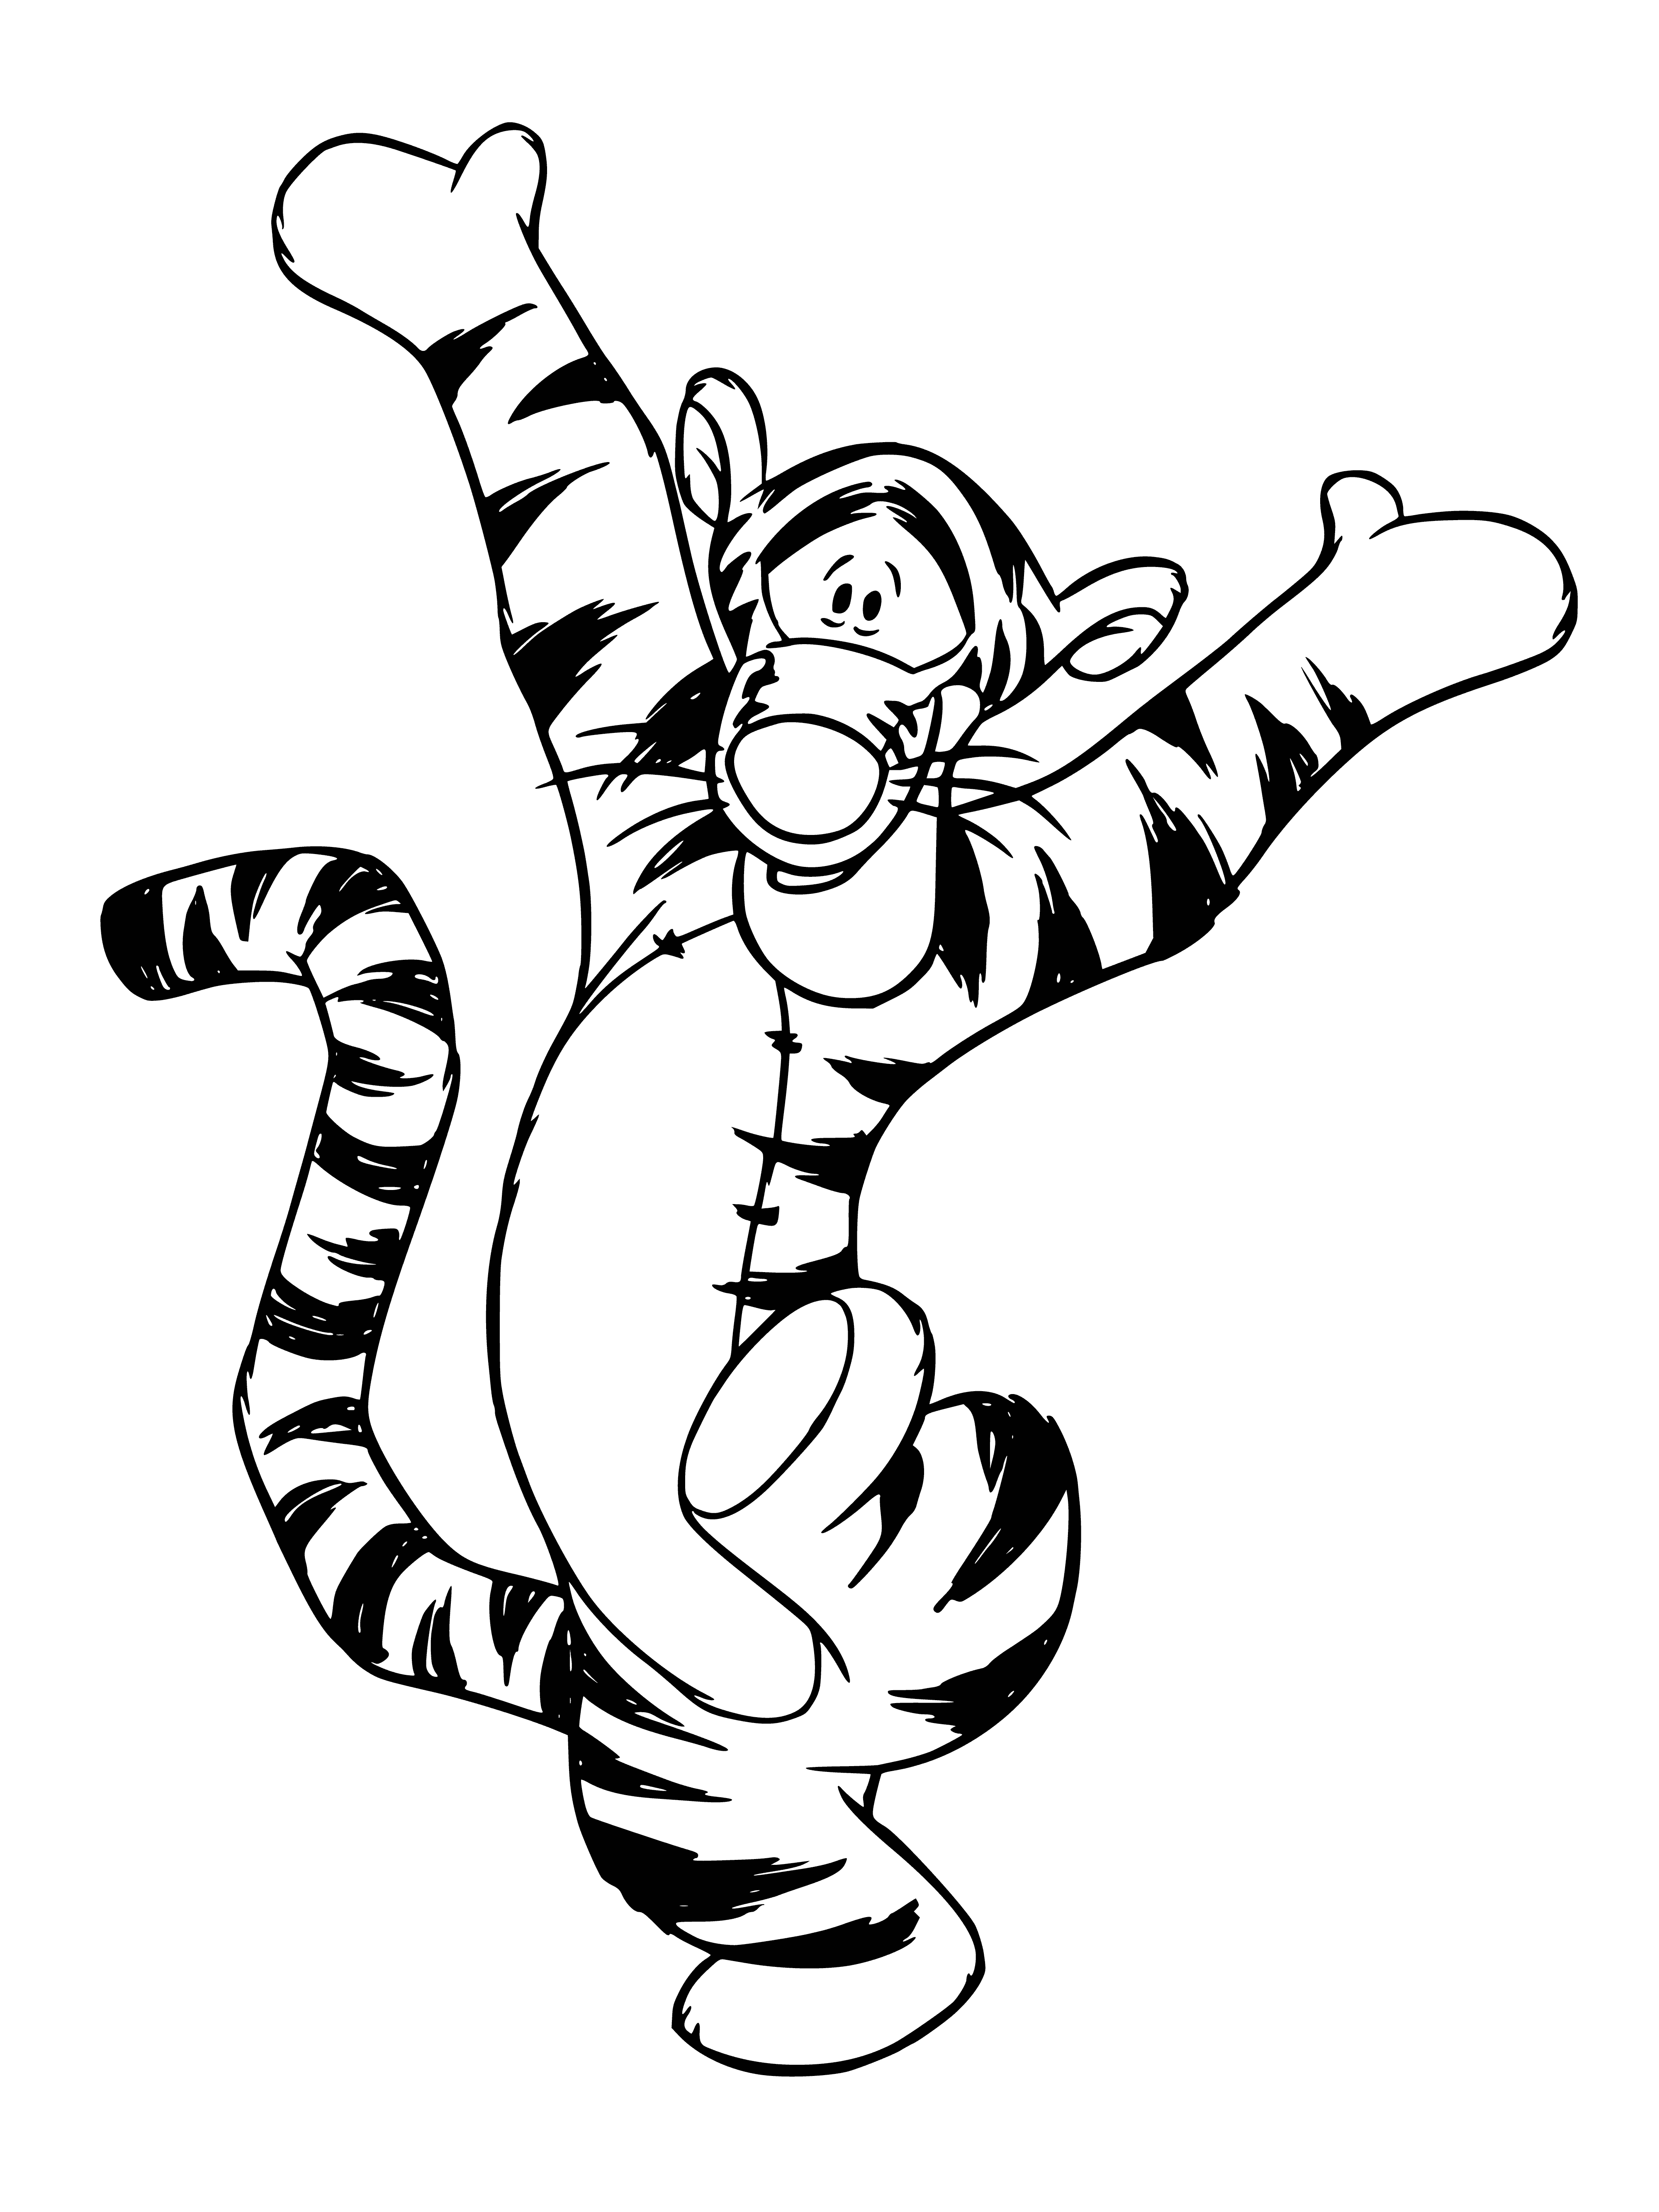 Tiger cub coloring page